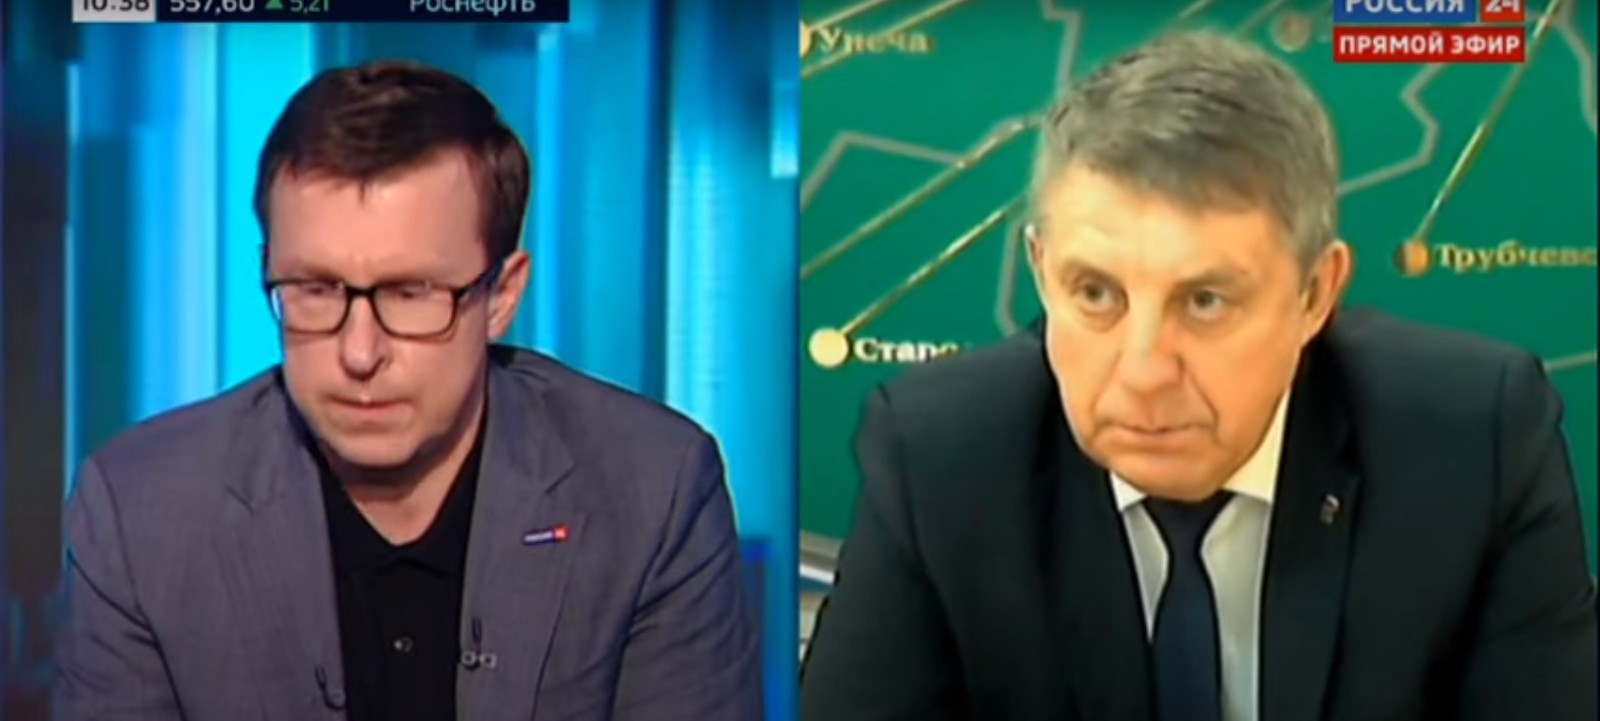 Брянский губернатор сообщил телеканалу «Россия 24» об обнаружении «омикрона» в регионе